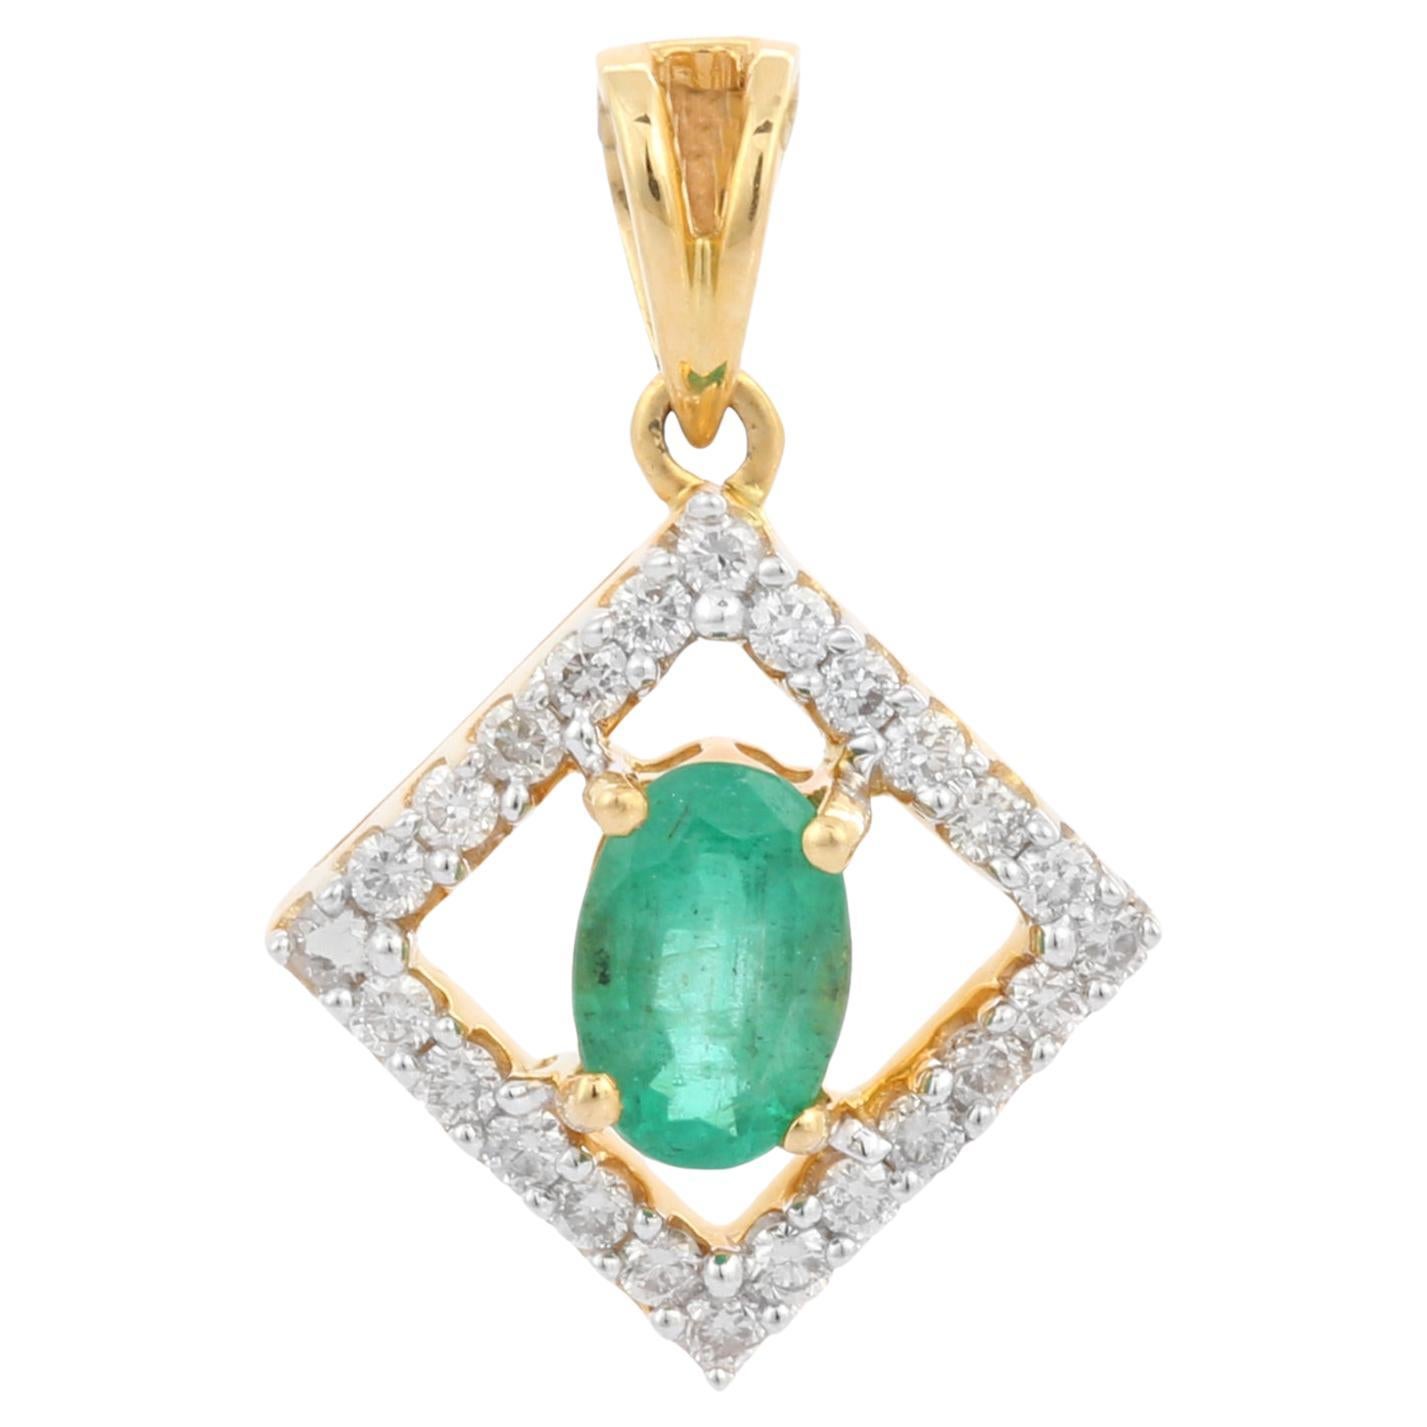 Minimalist 18K Yellow Gold Prong Set Emerald Pendant with Diamonds